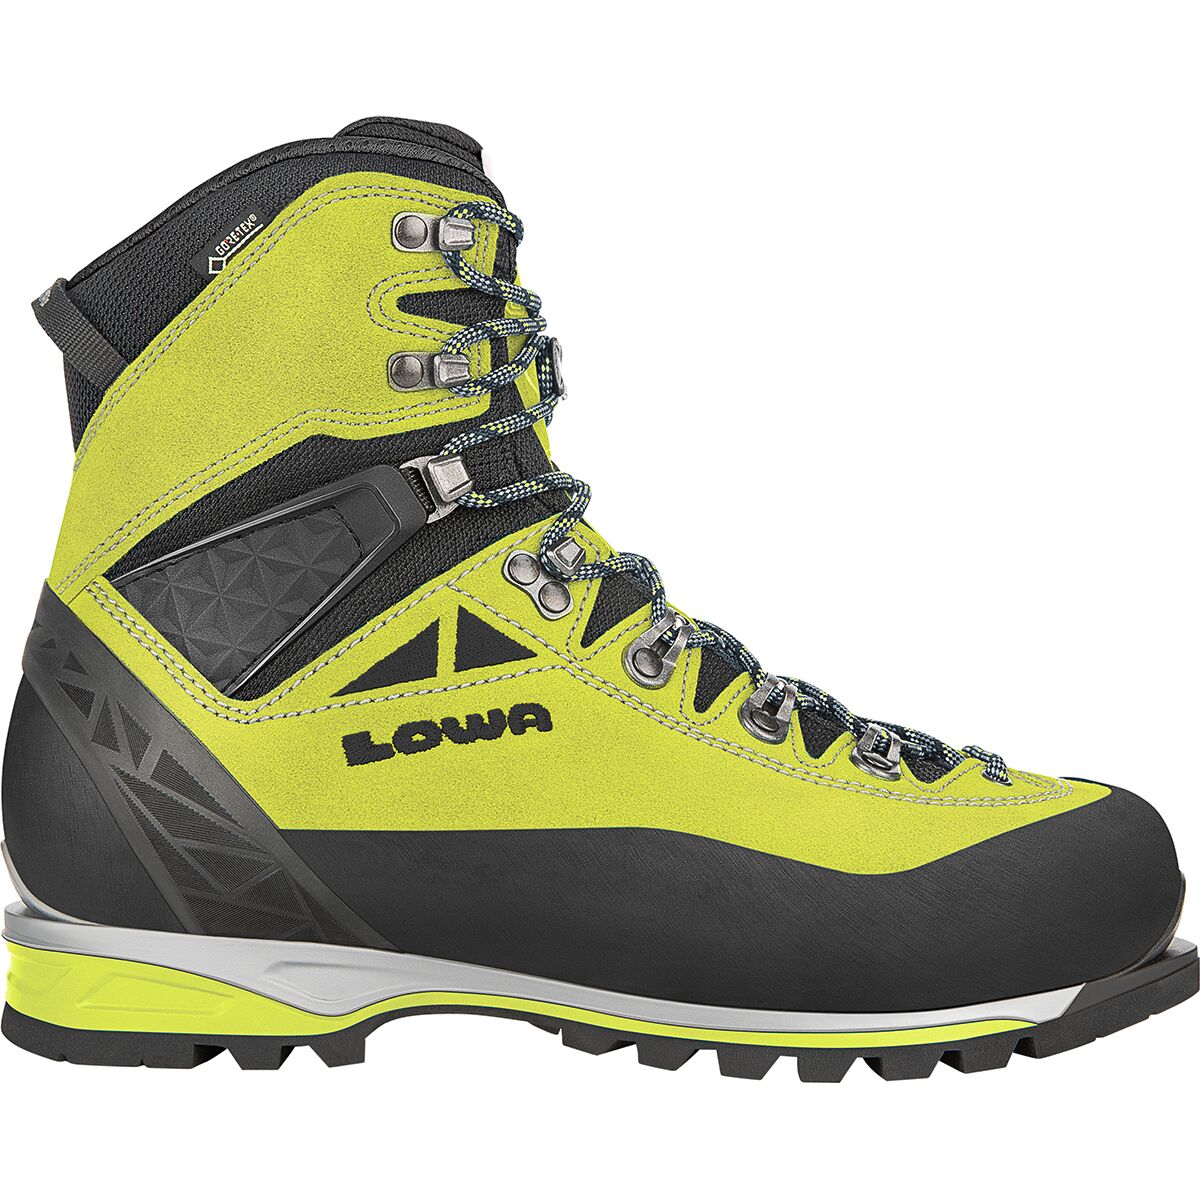 Alpine Expert GTX Mountaineering Boot - Men